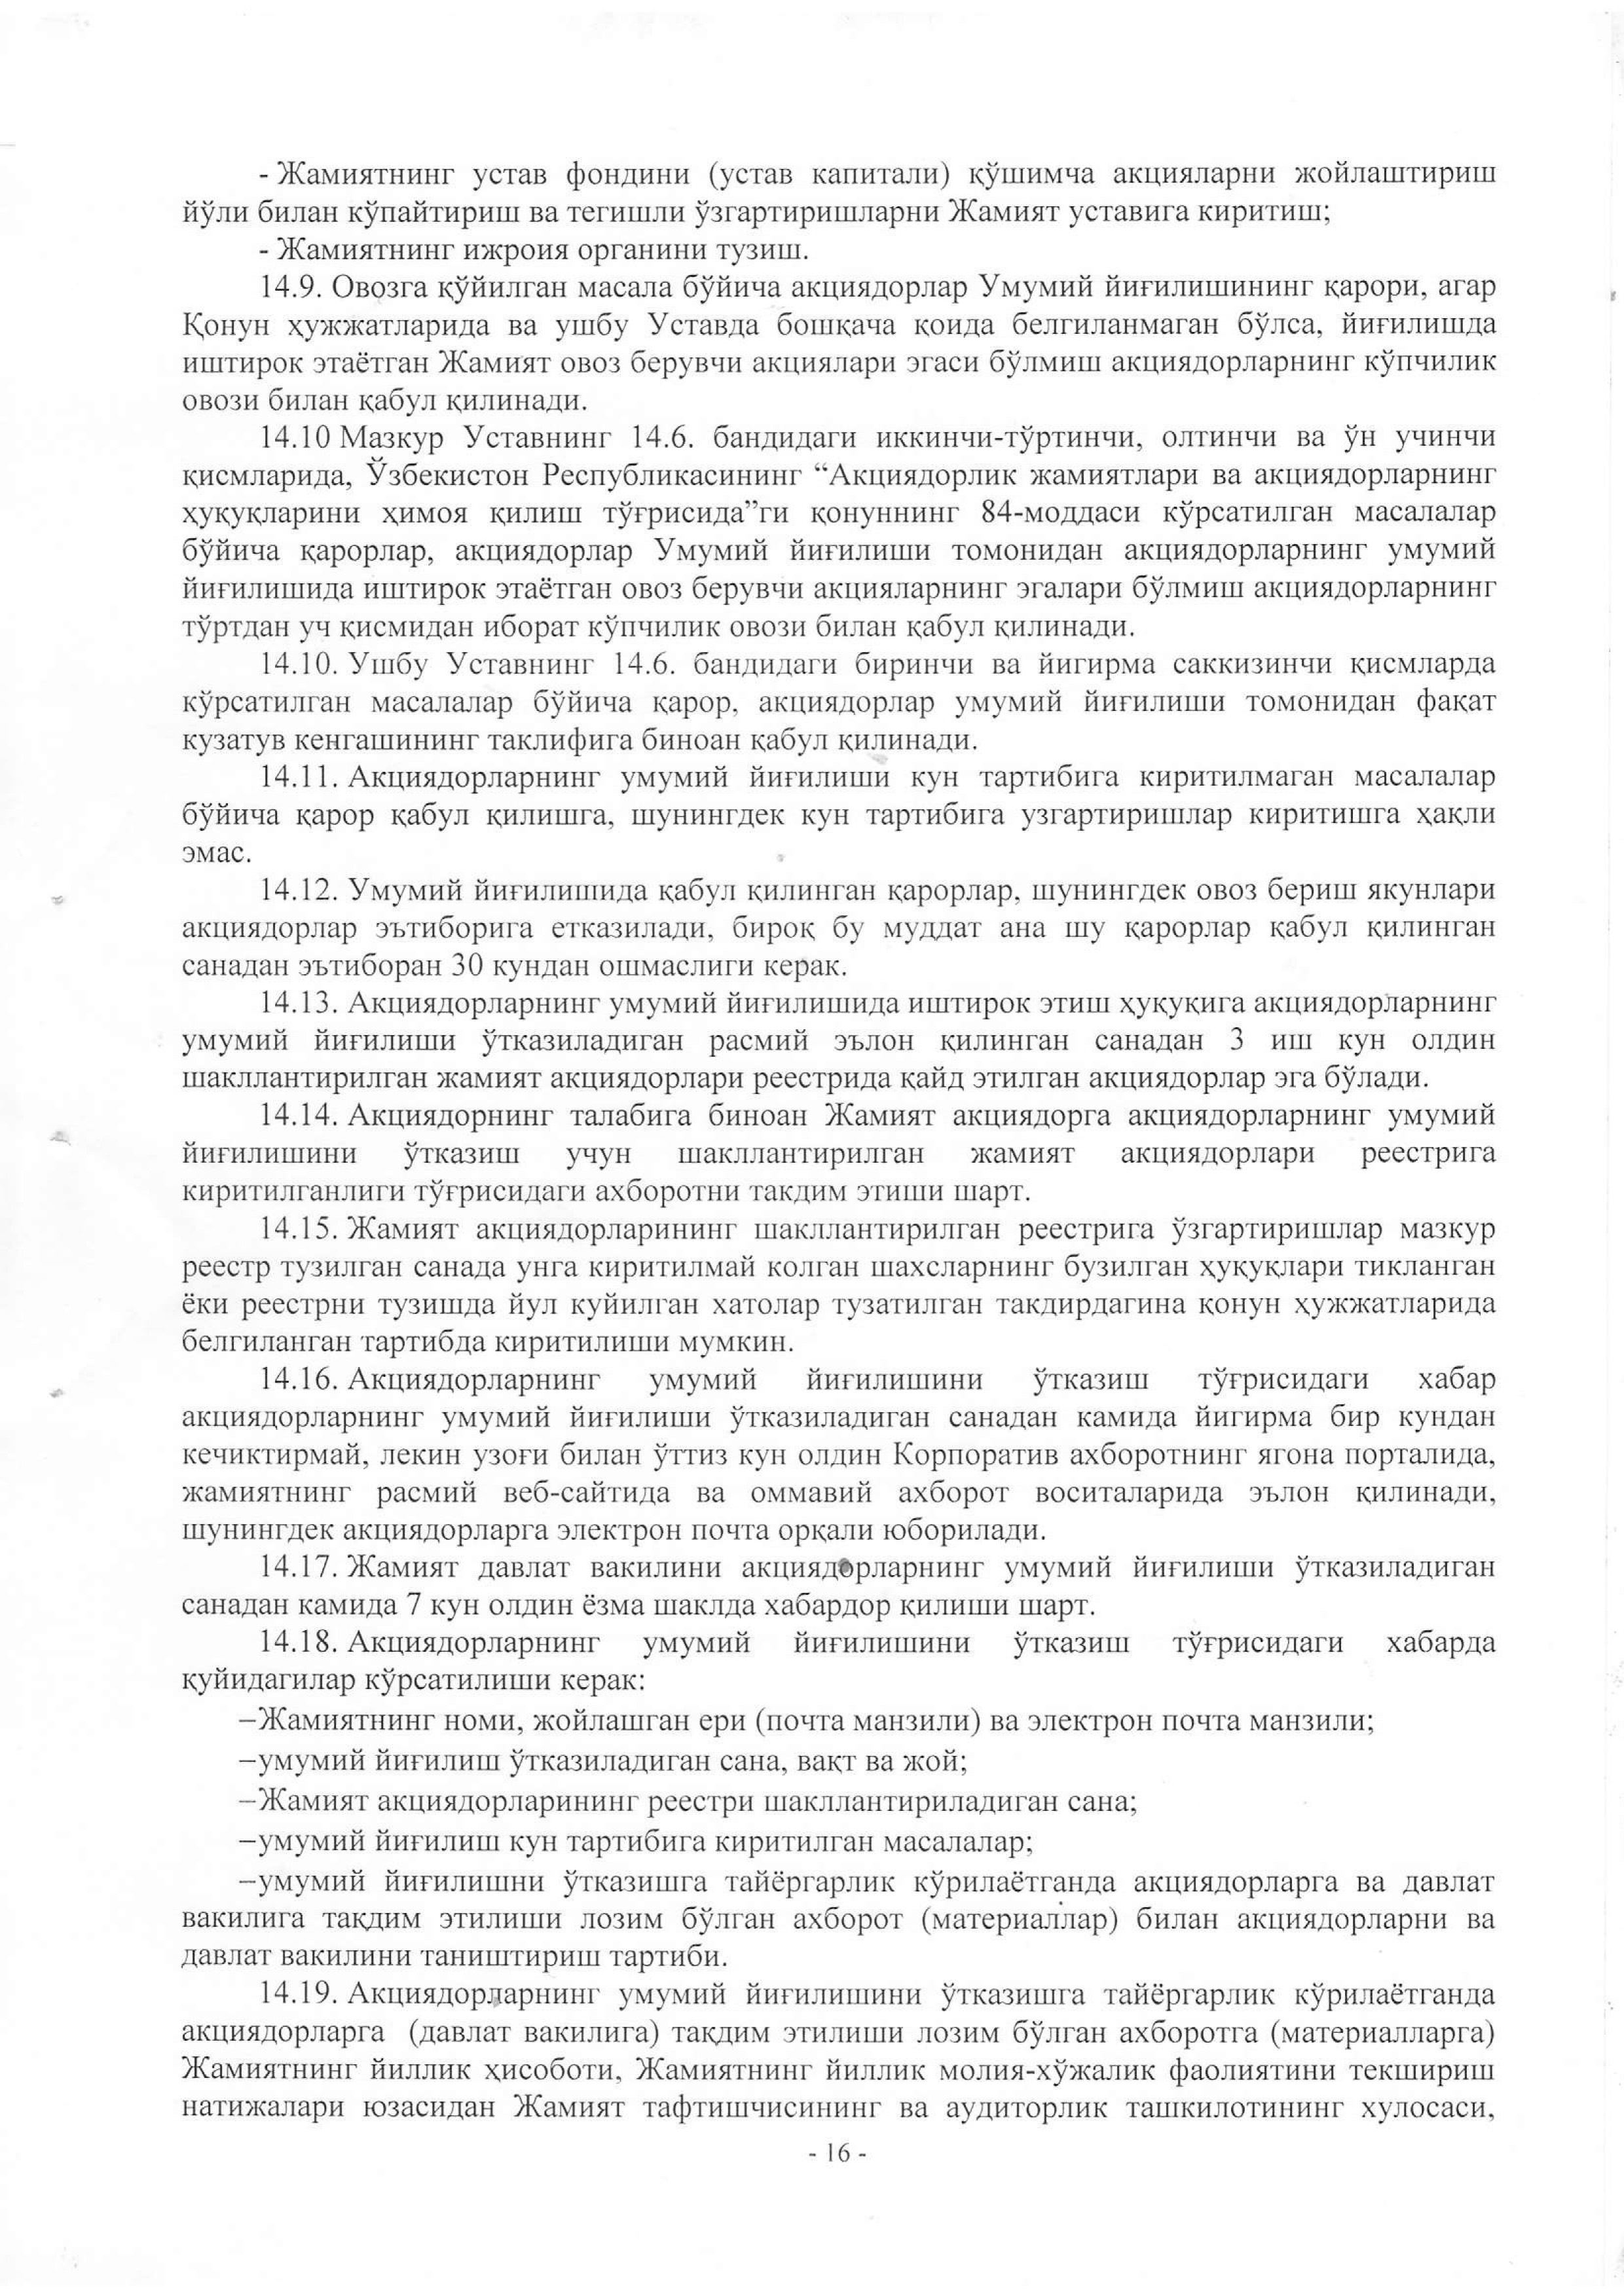 устав 2019 жахон бозори-16